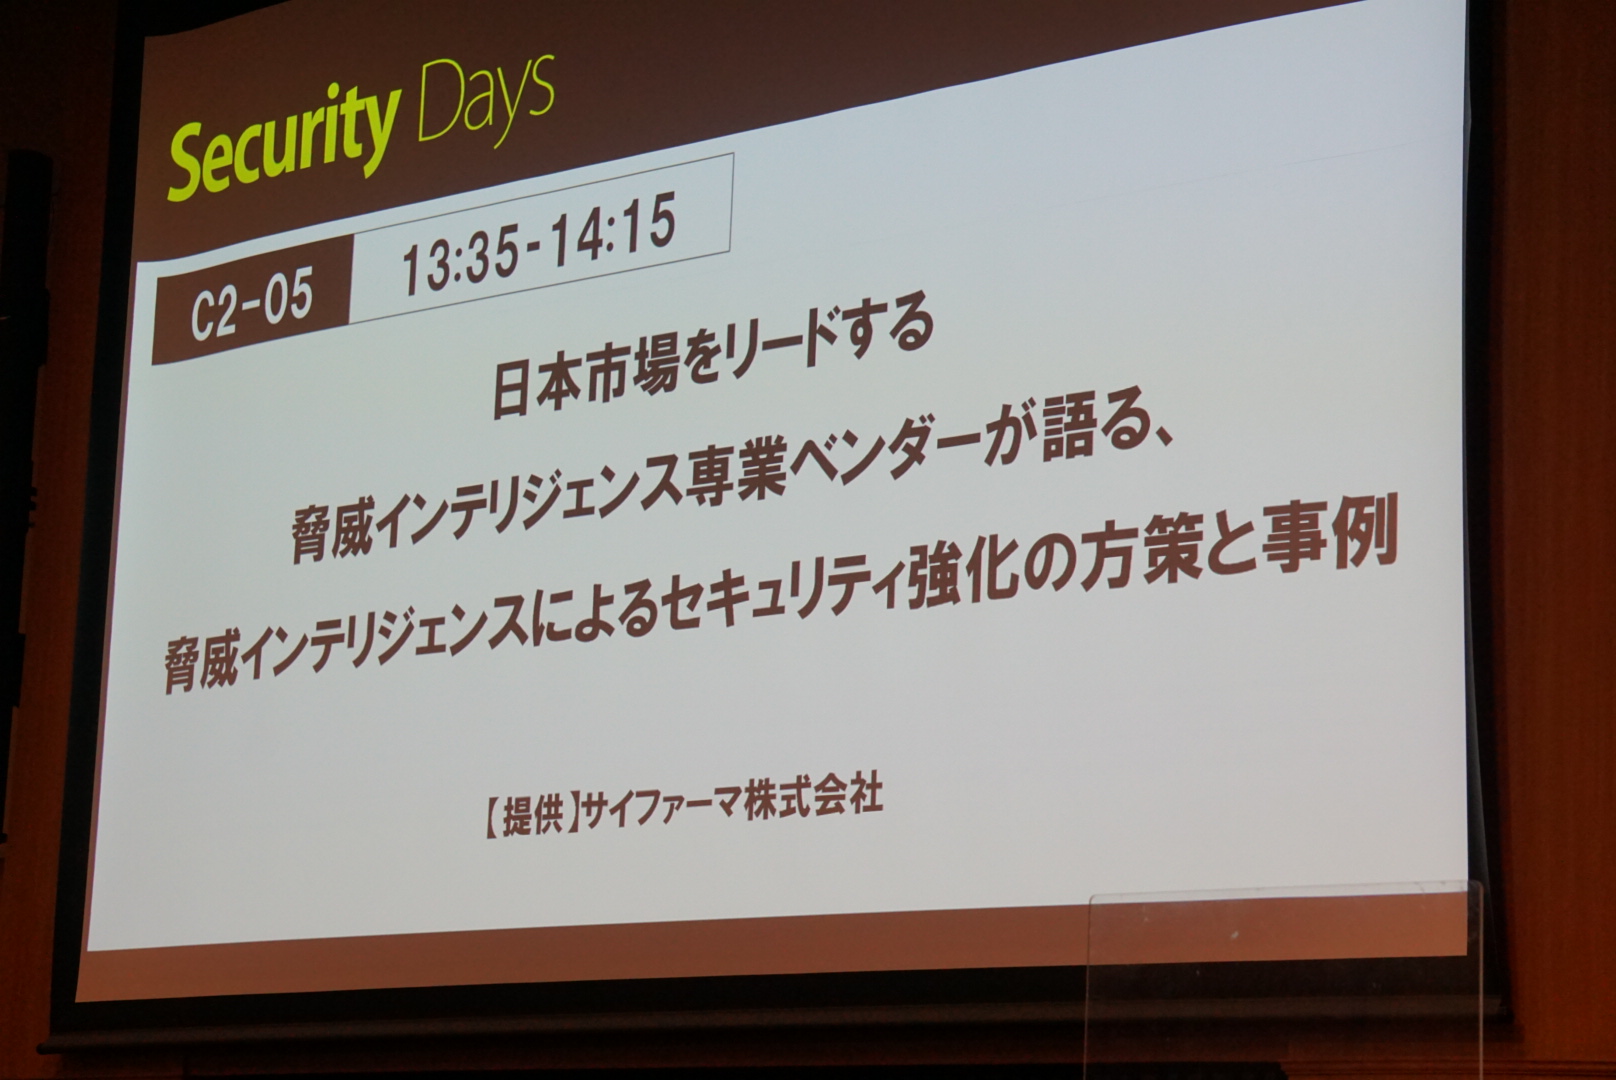 Security Days 2021 Spring：日本市場をリードする脅威インテリジェンス専業ベンダーが語る、脅威インテリジェンスによるセキュリティ強化の方策と事例